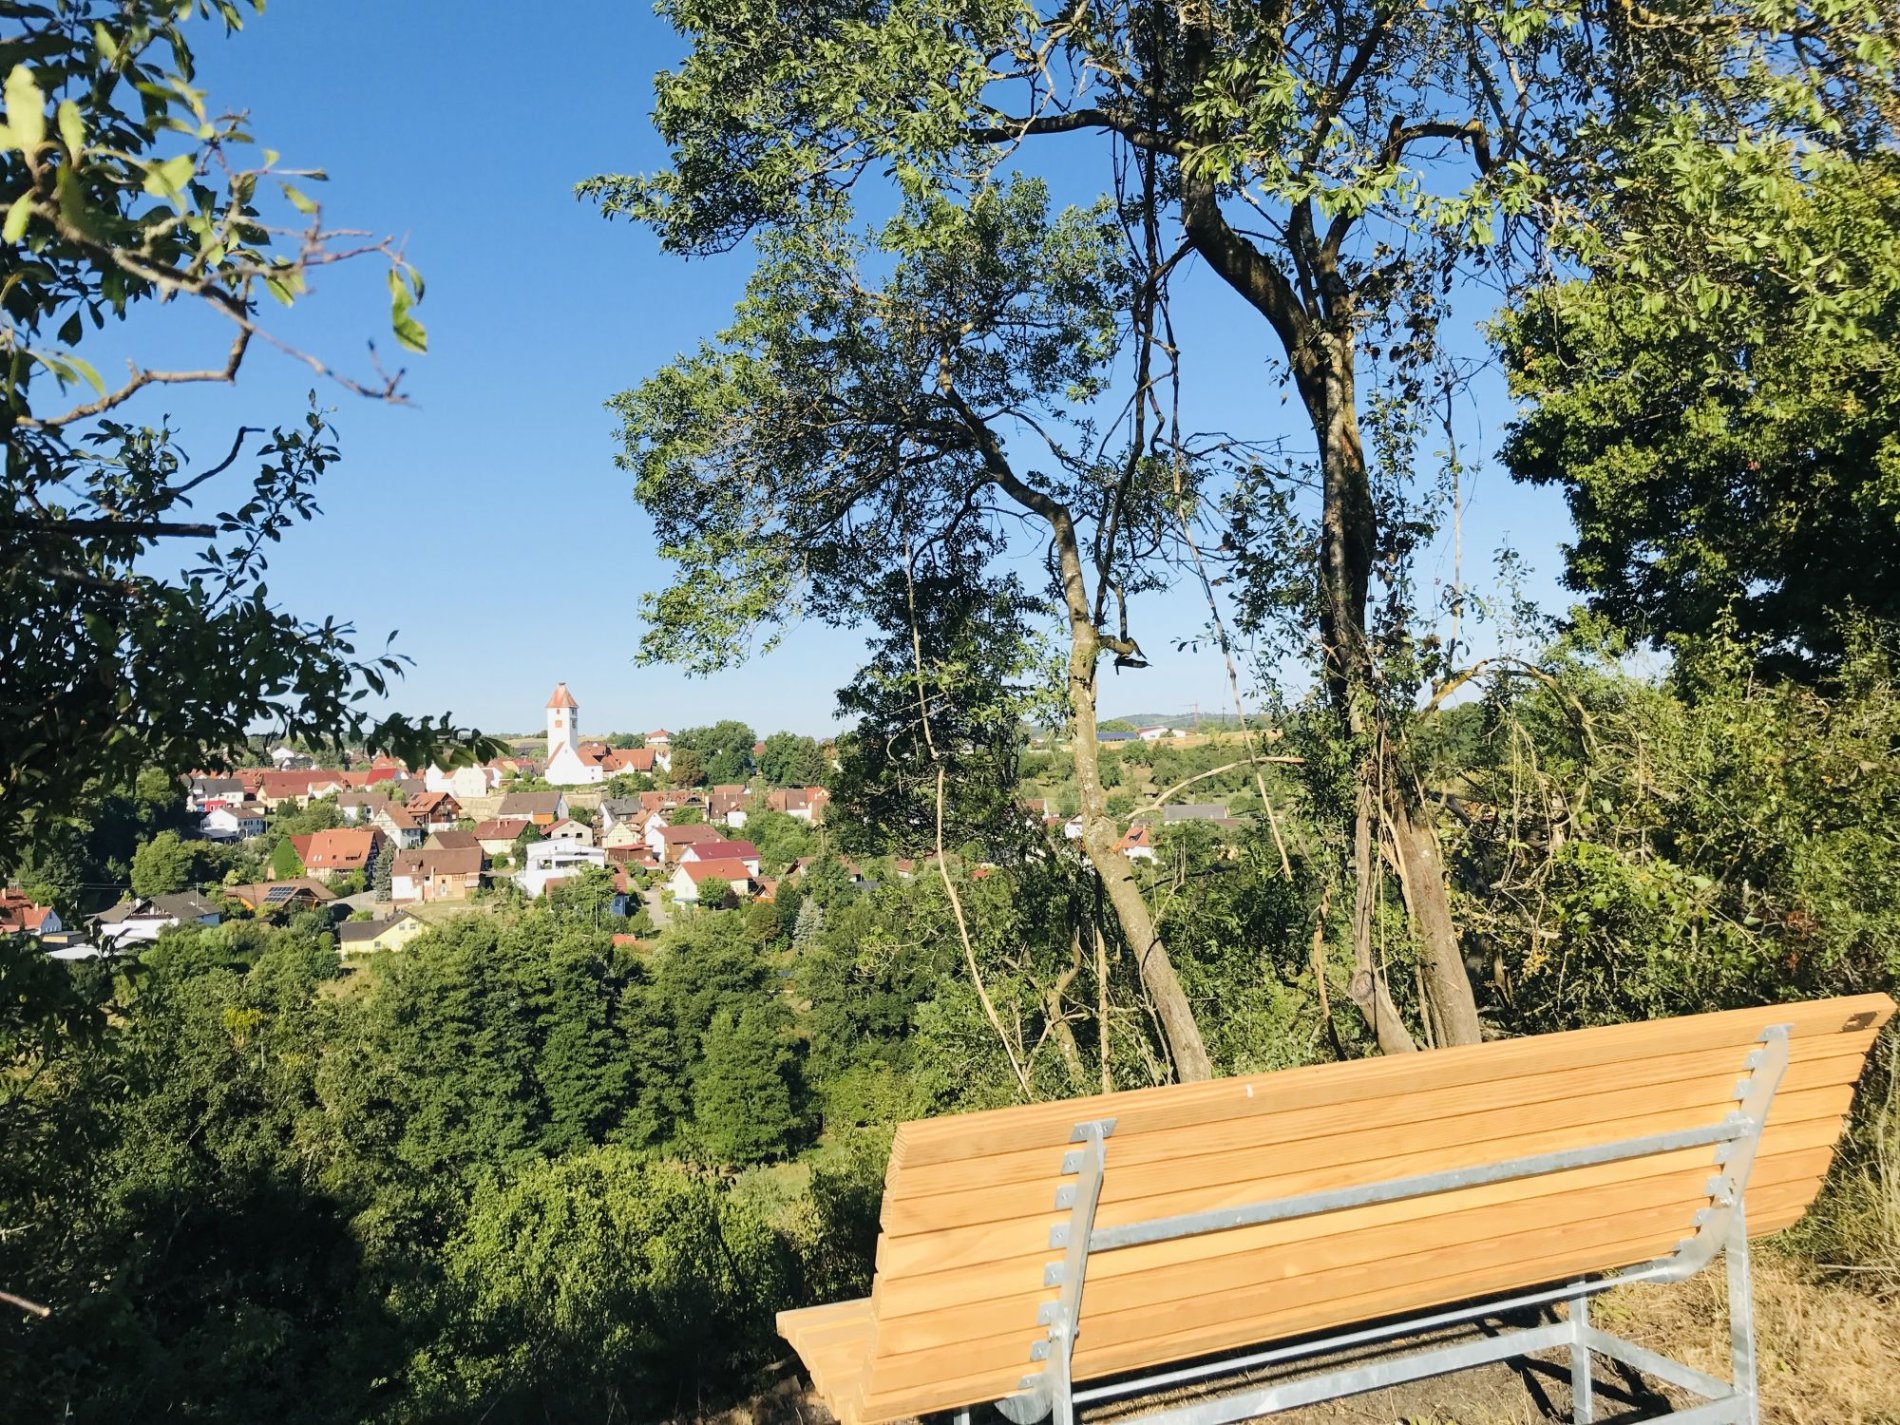 Aussichtskanzel Steingrube in Hechingen-Weilheim an der Hutzel-Tour